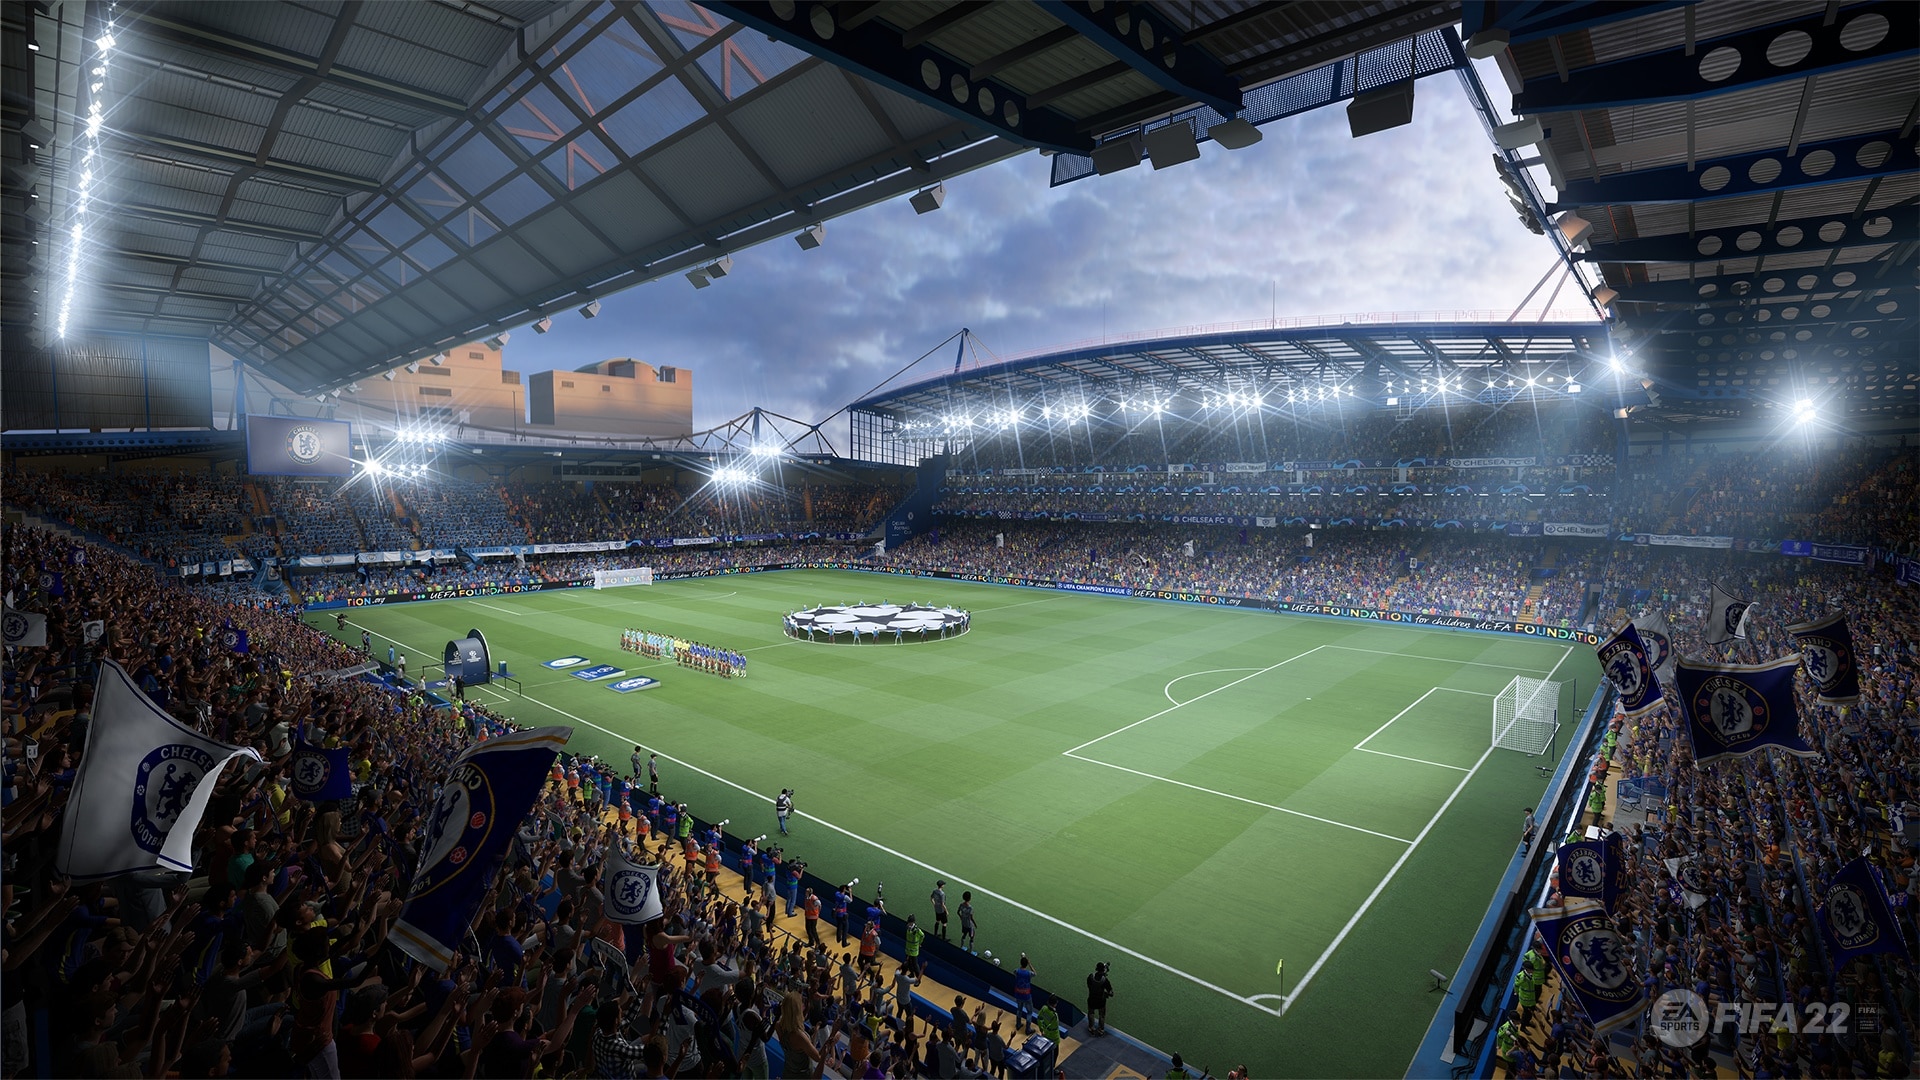 Ve hře FIFA 22 je opět mnoho licencovaných stadionů. Zde vidíme Stamford Bridge. Domácí hřiště FC Chelsea.